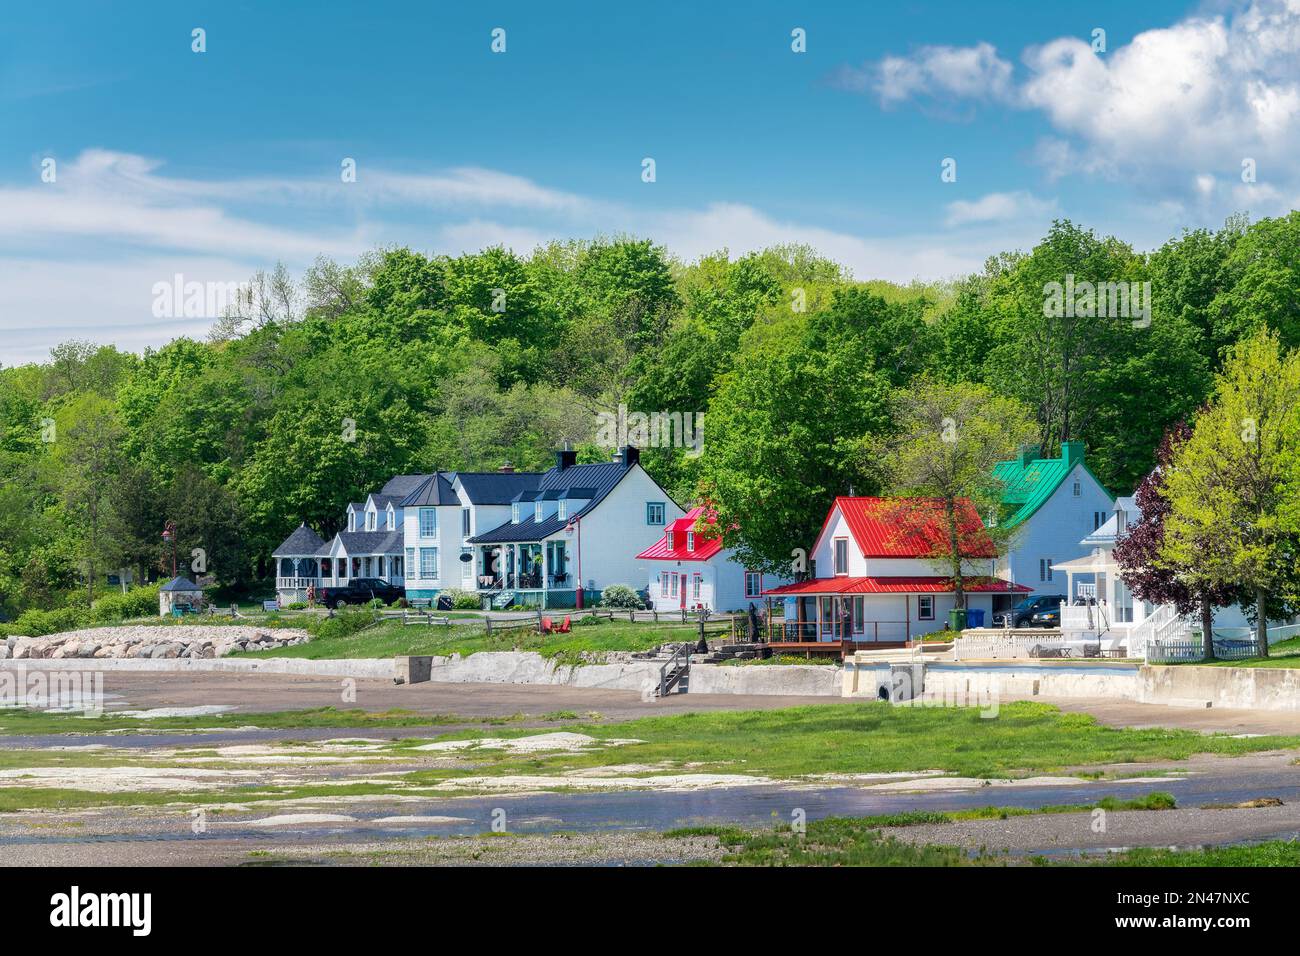 Maisons colorées dans le village de Saint-Jean sur l'île d'Orléans près de Québec, Canada Banque D'Images